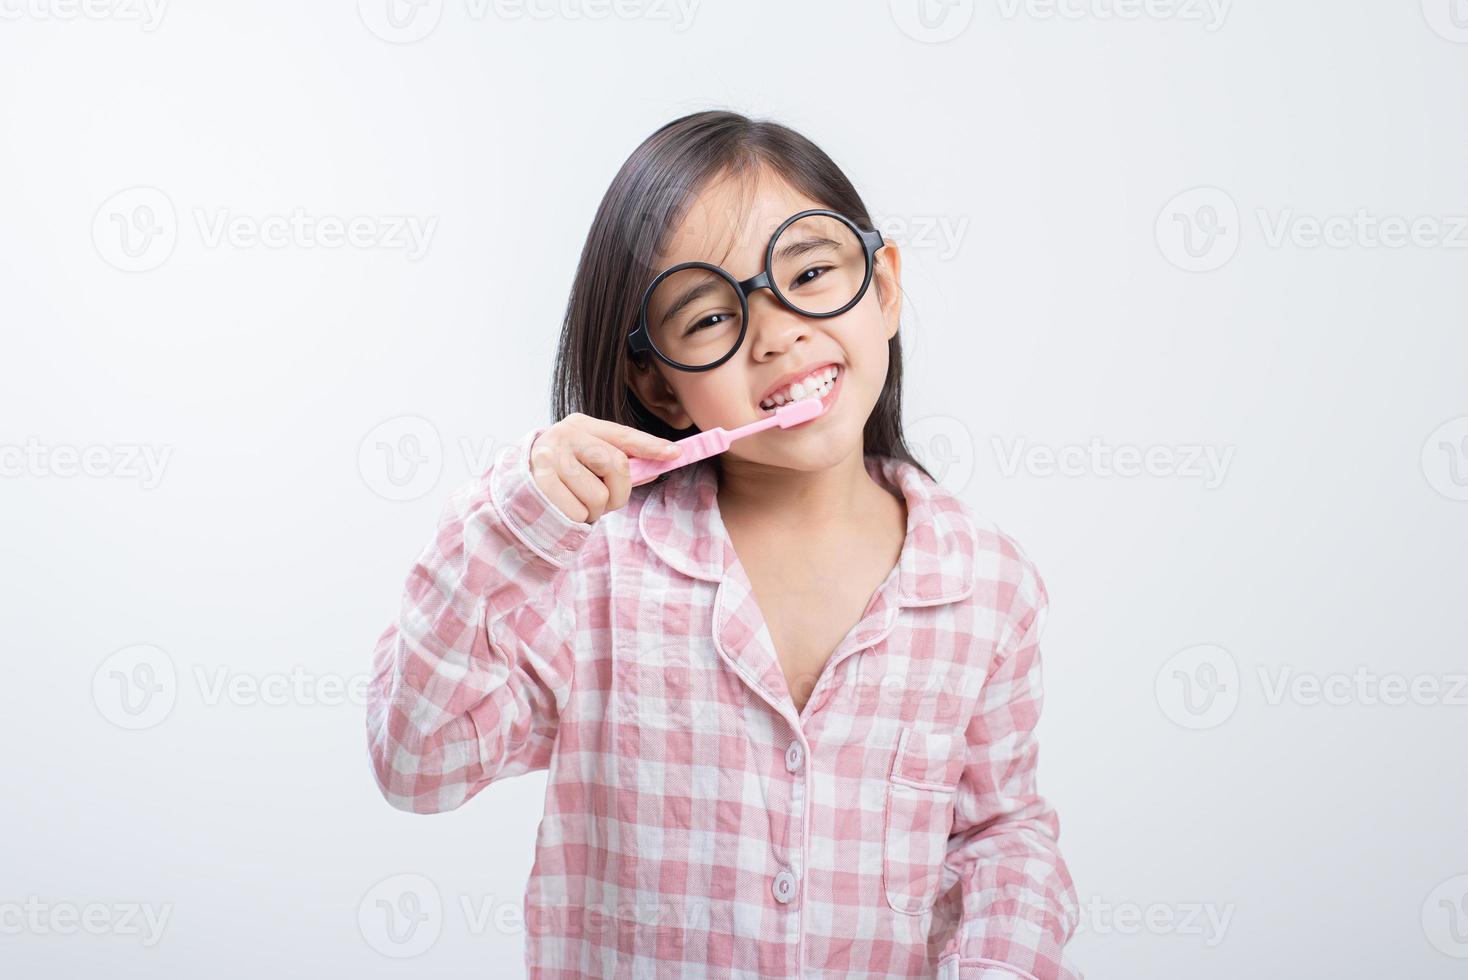 niña asia cepillarse los dientes felizmente fondo blanco foto